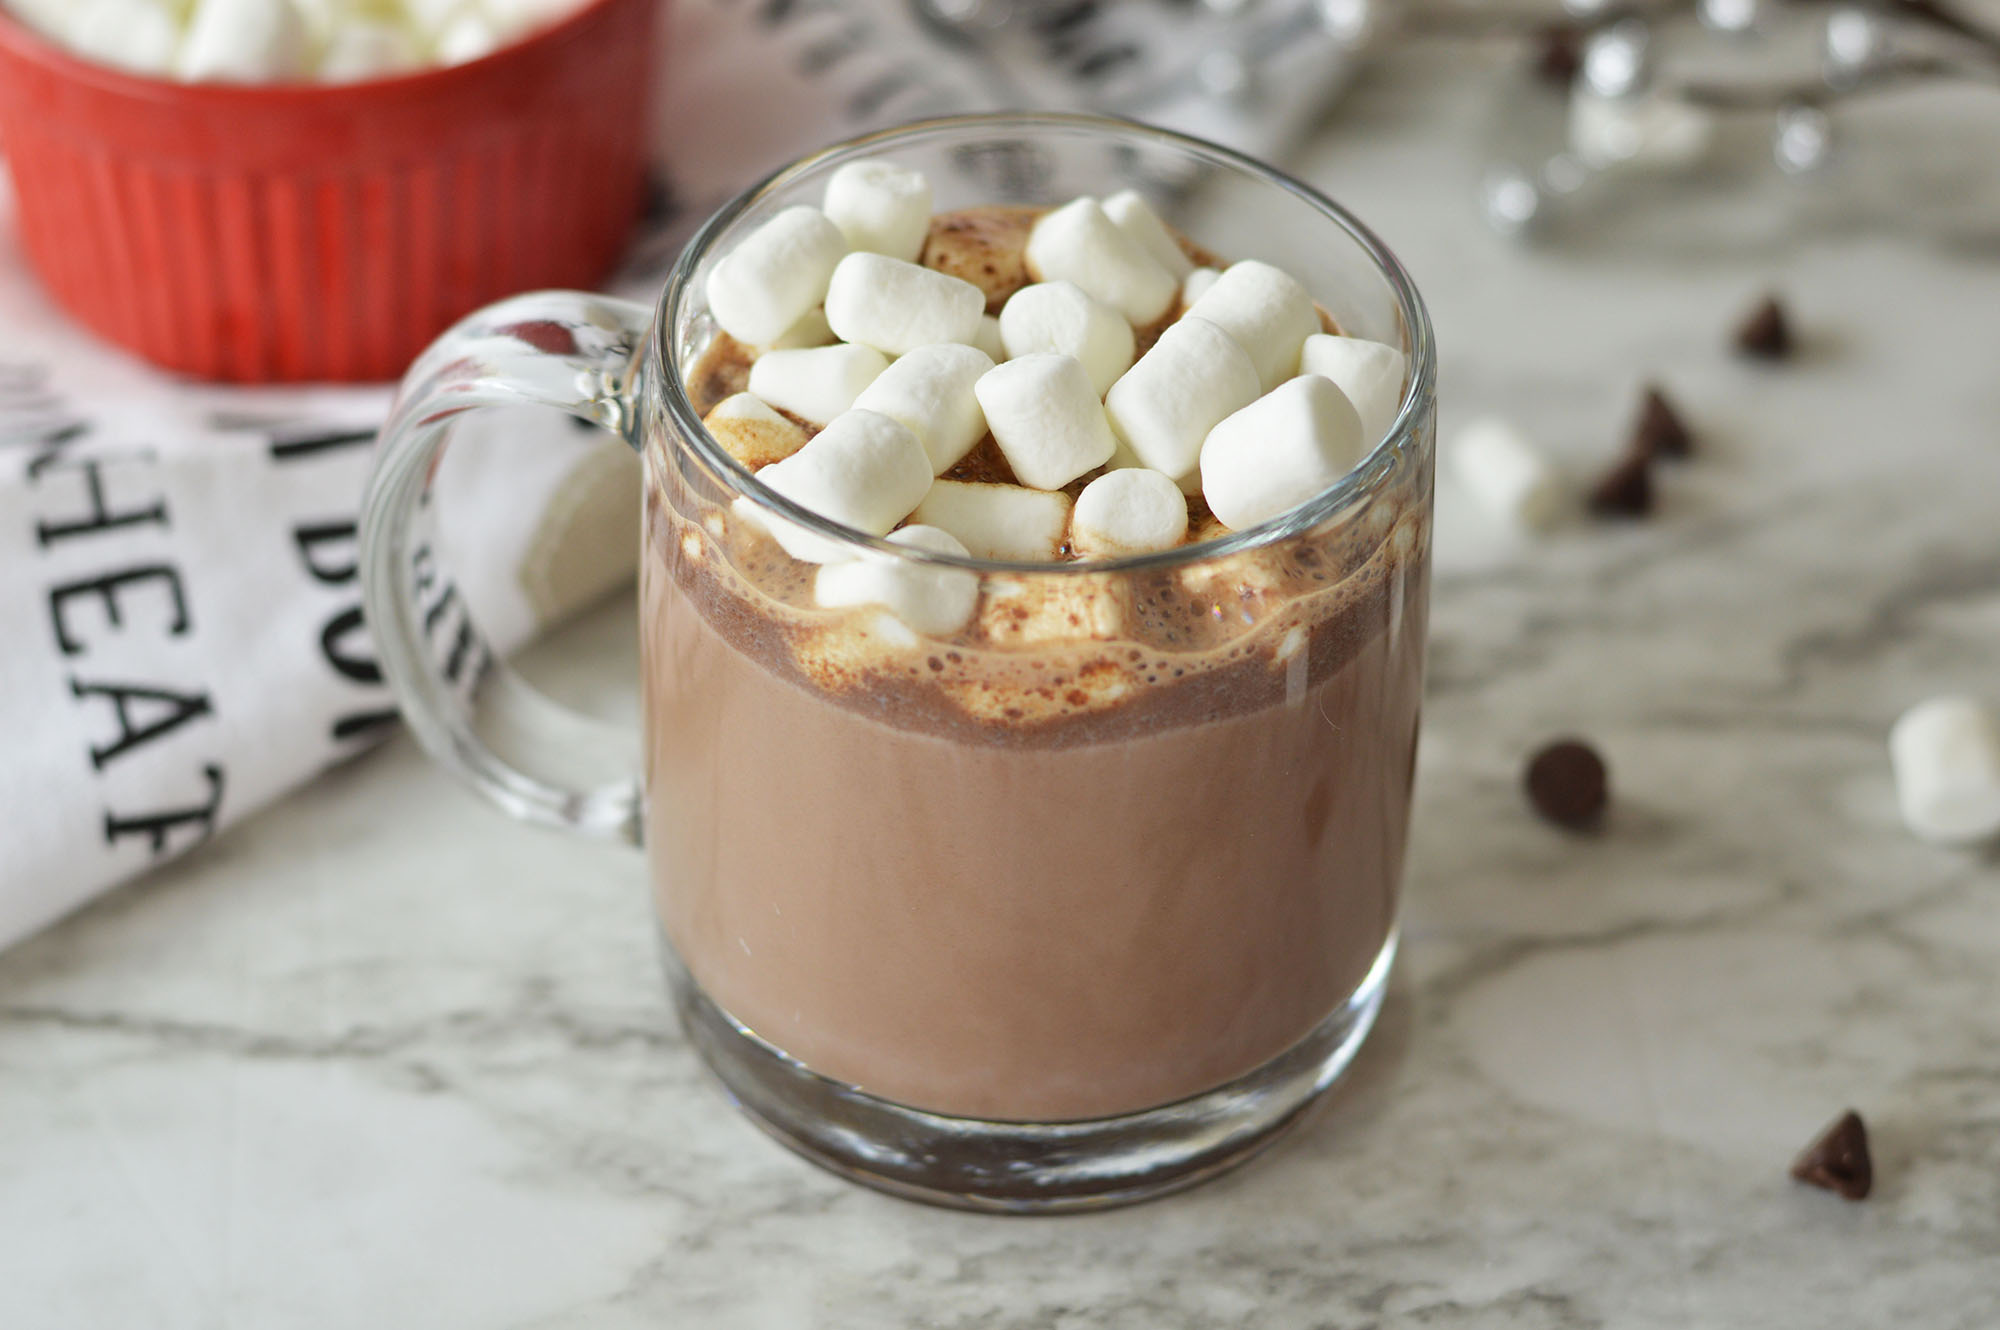 RumChata Hot Chocolate